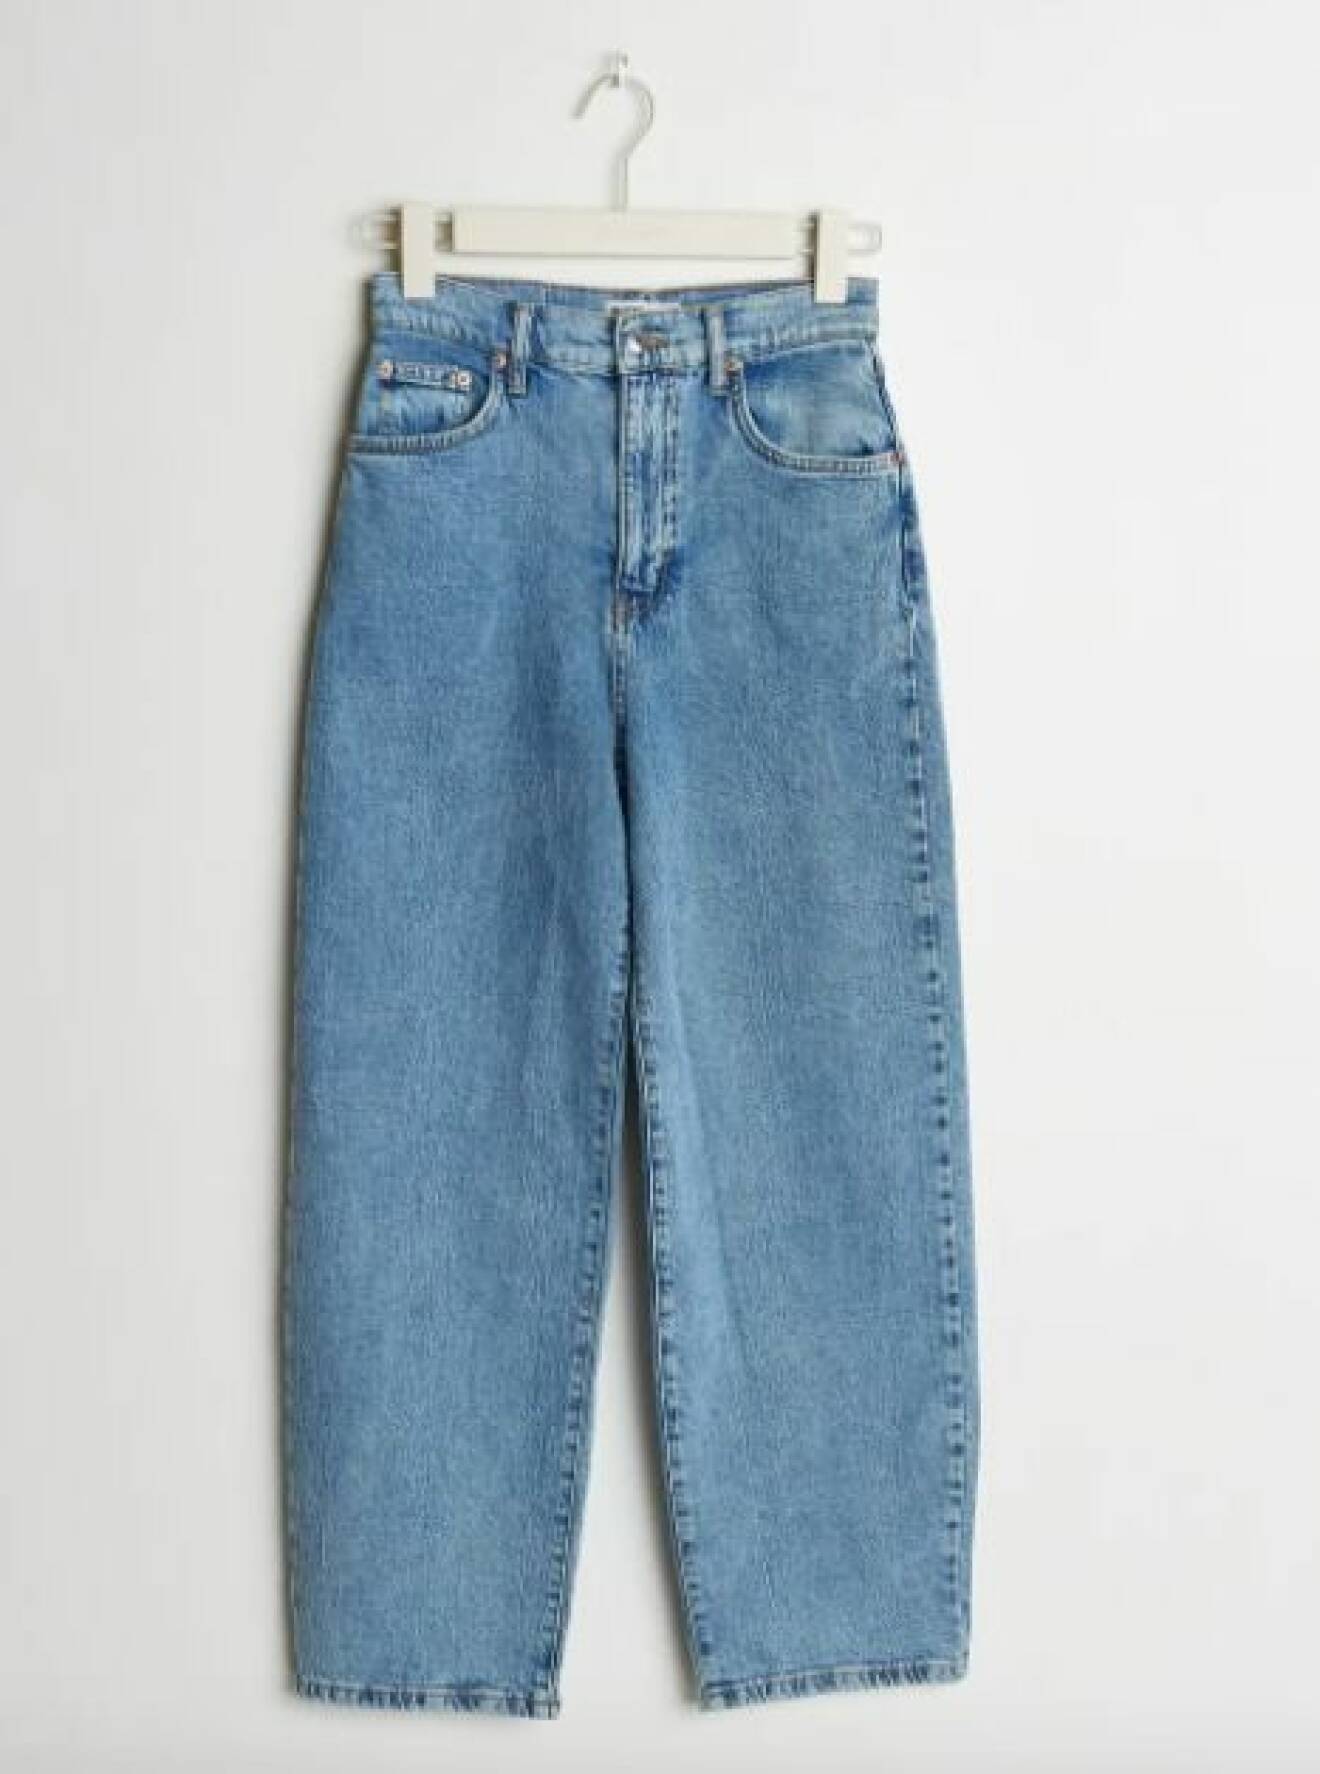 Jeans i mom-modell, croppade och lösa i passformen. Jeans från Gina tricot.